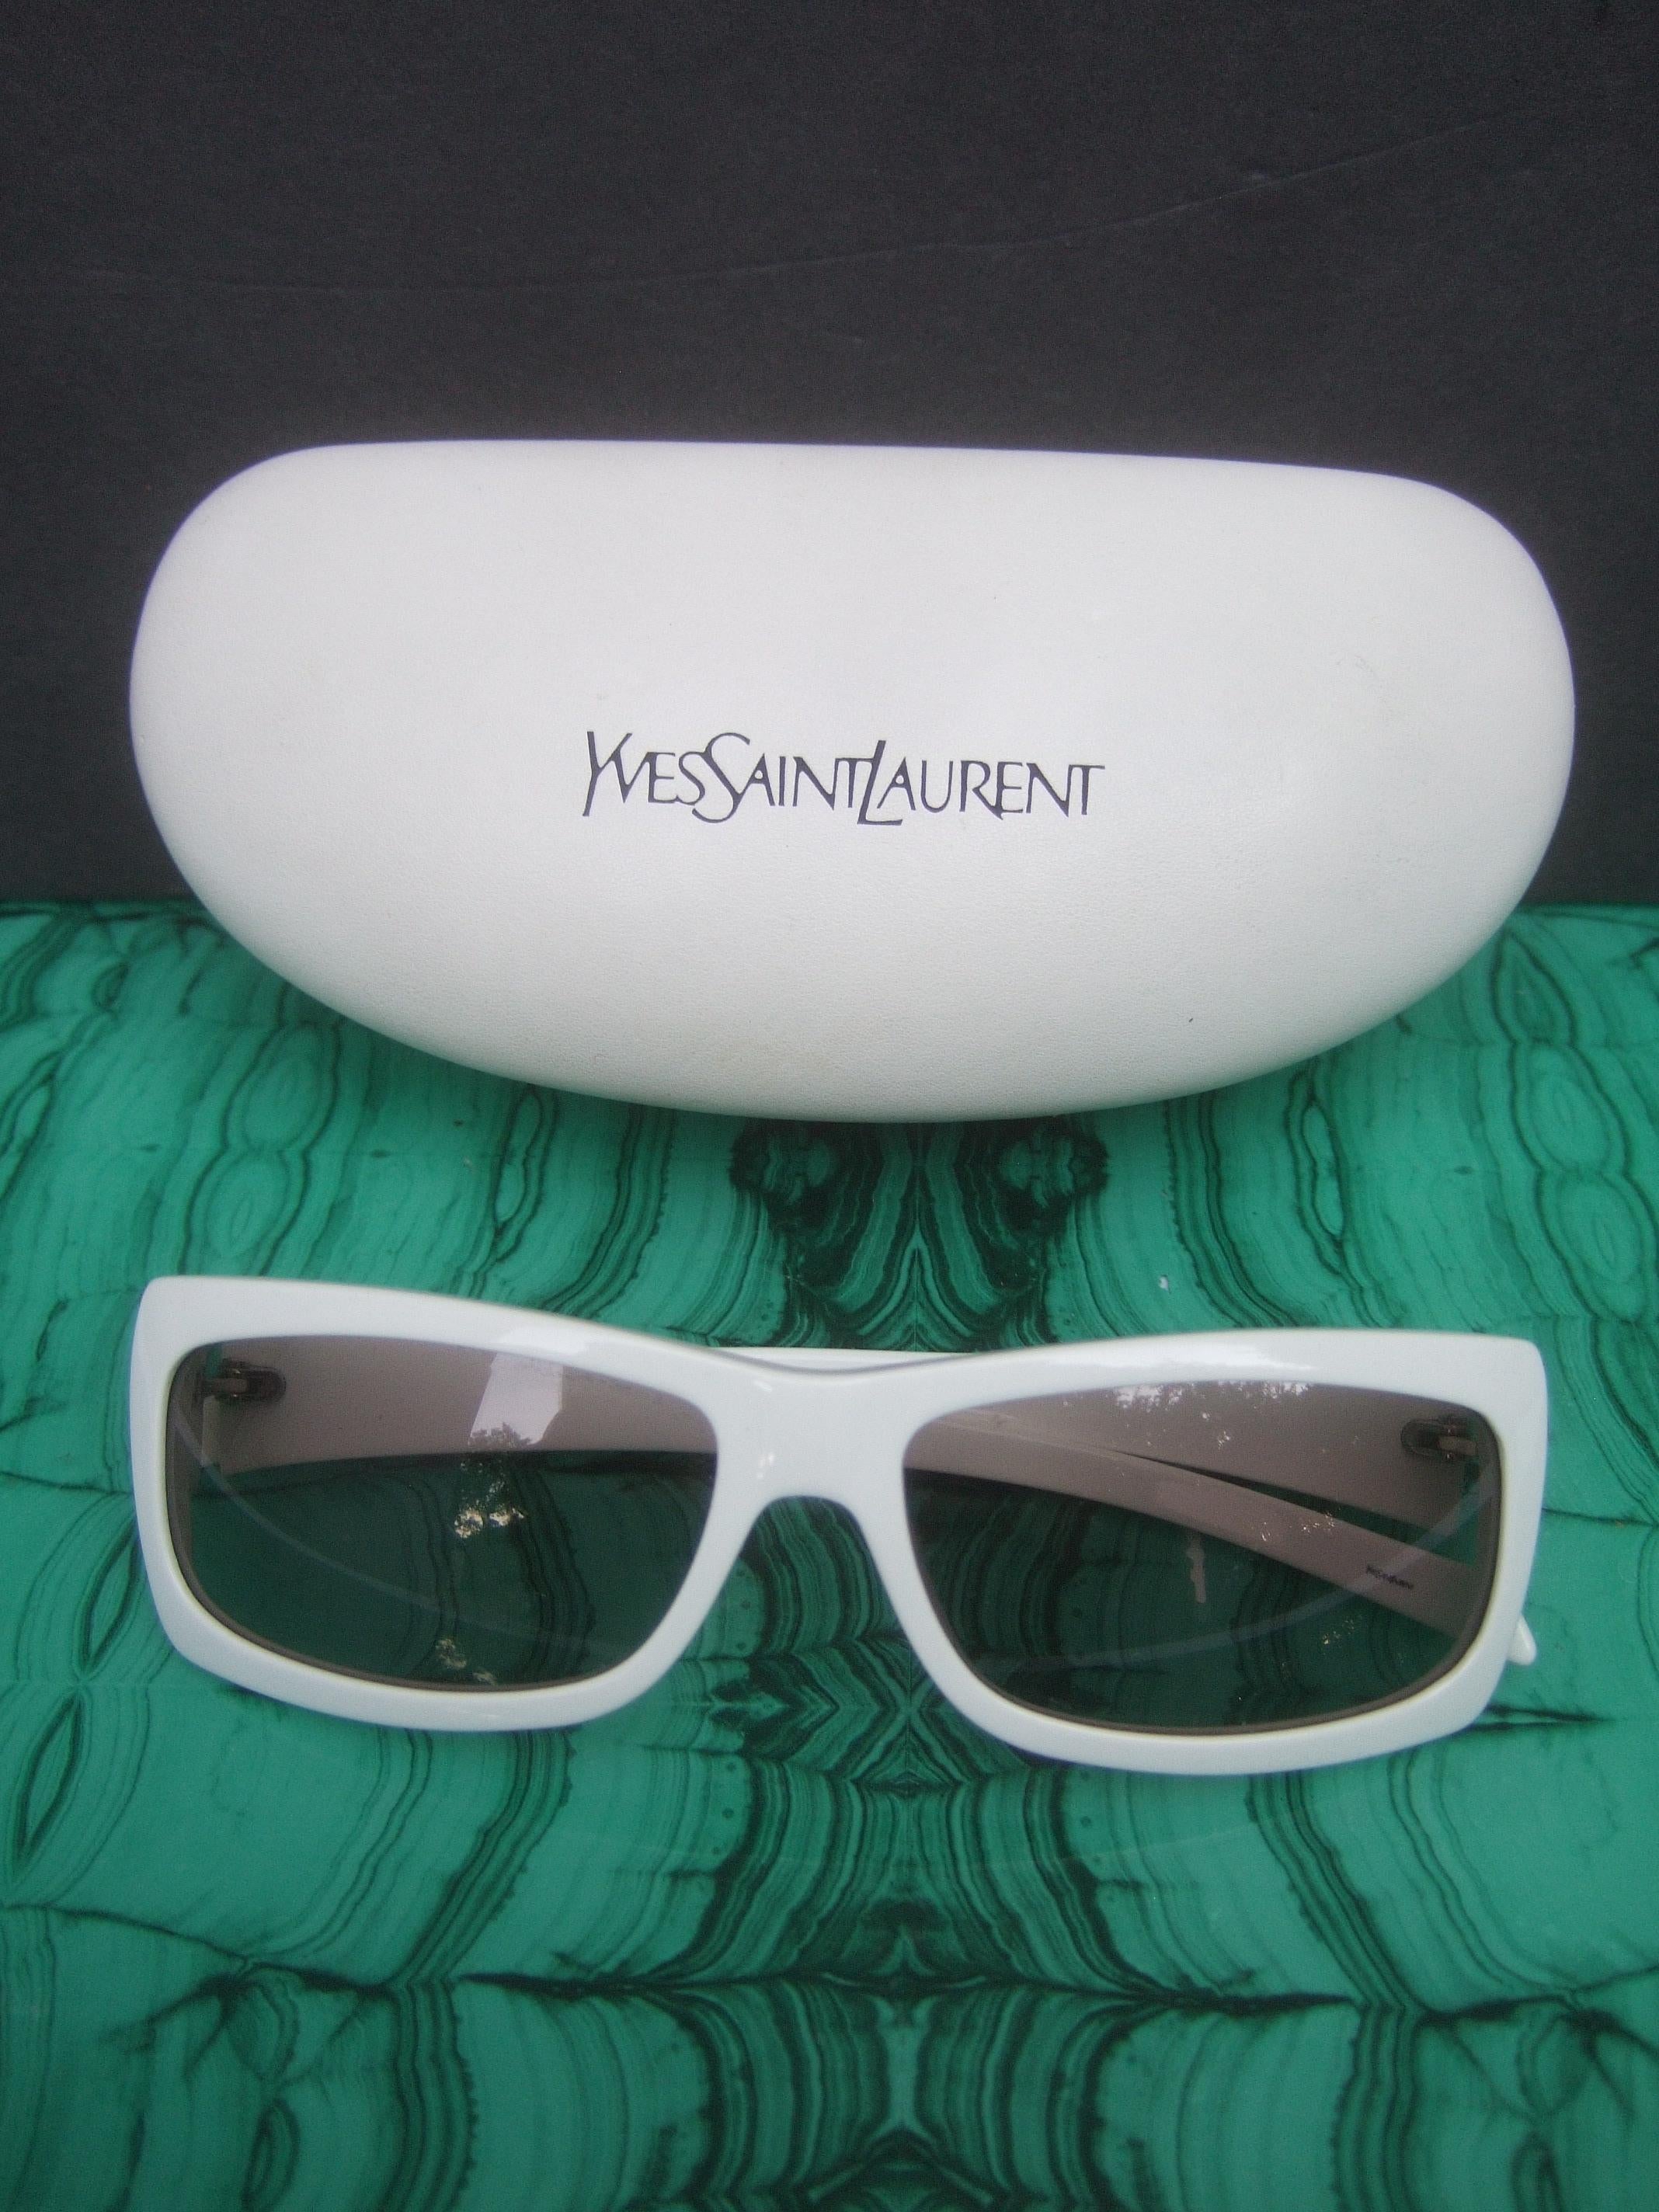 Yves Saint Laurent Italian White Plastic Frame Sunglasses in YSL Case c 1990s 4